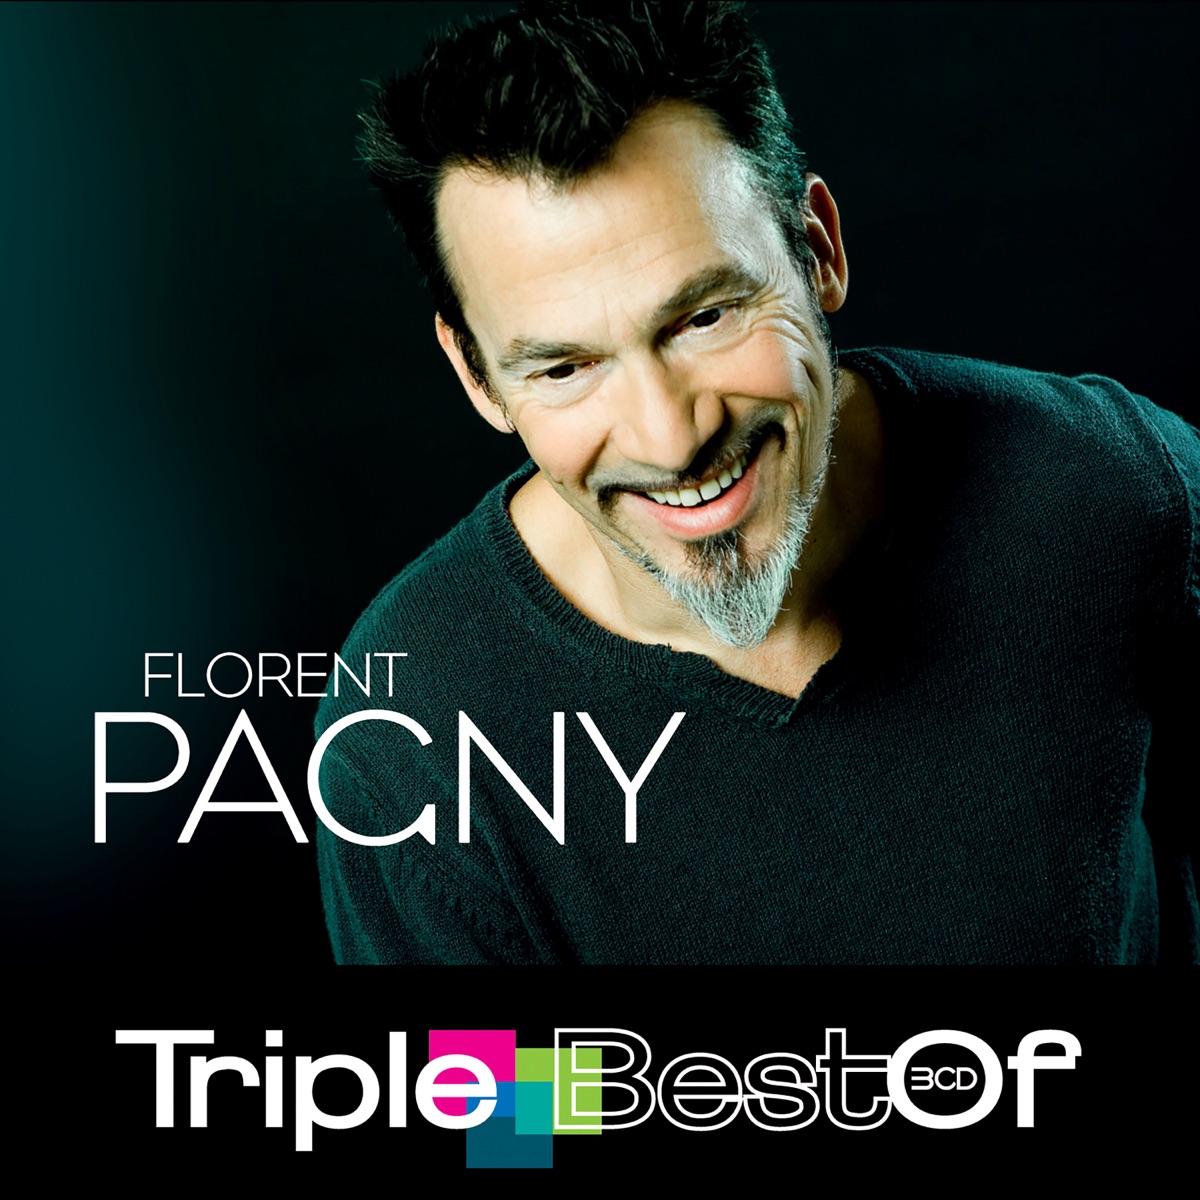 Triple Best Of – Album par Florent Pagny – Apple Music